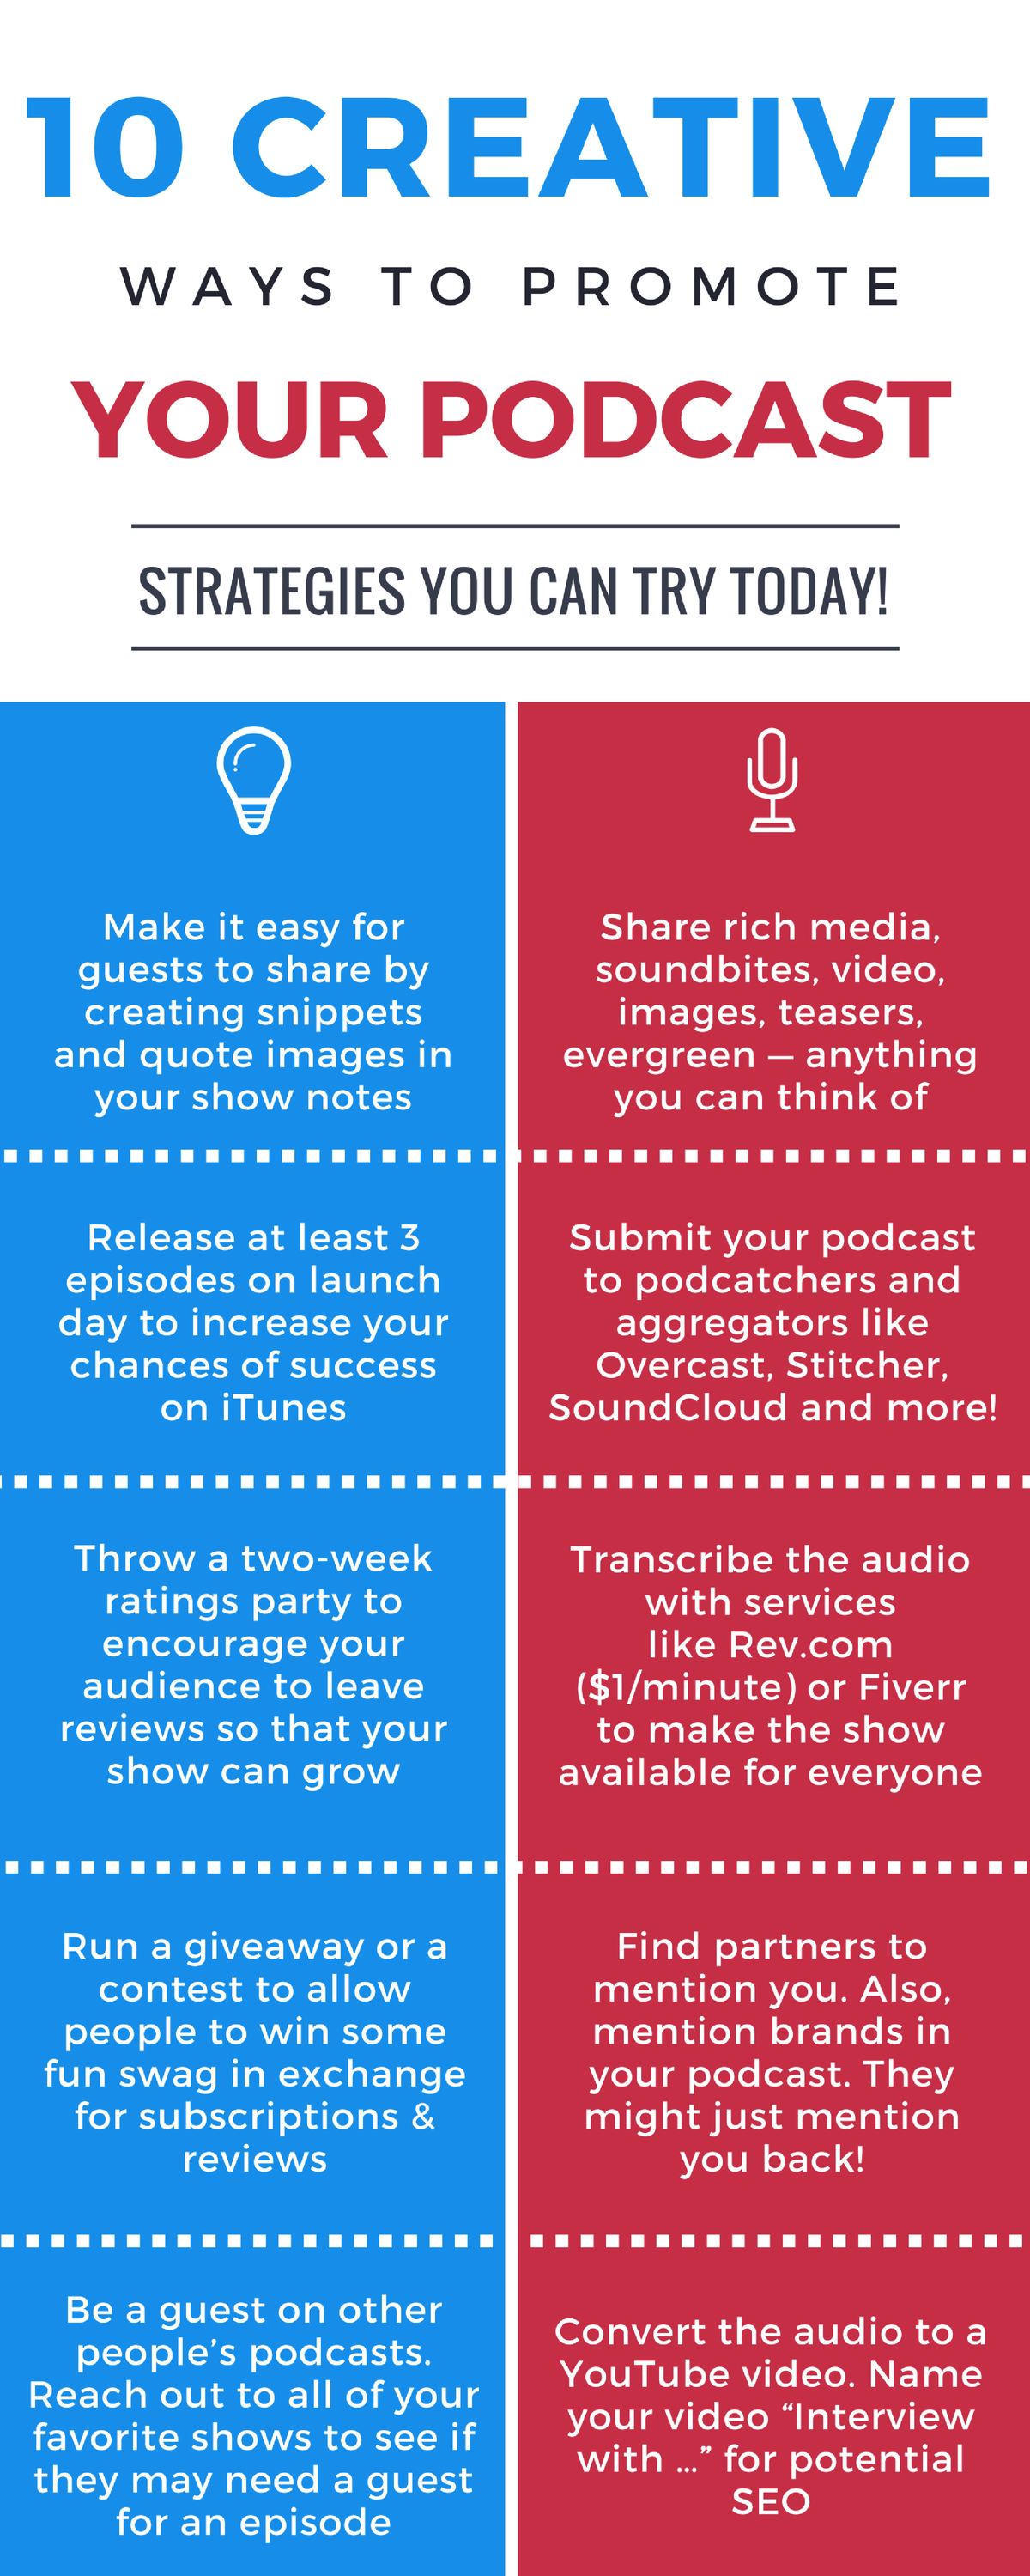 10 τρόποι προώθησης ενός podcast